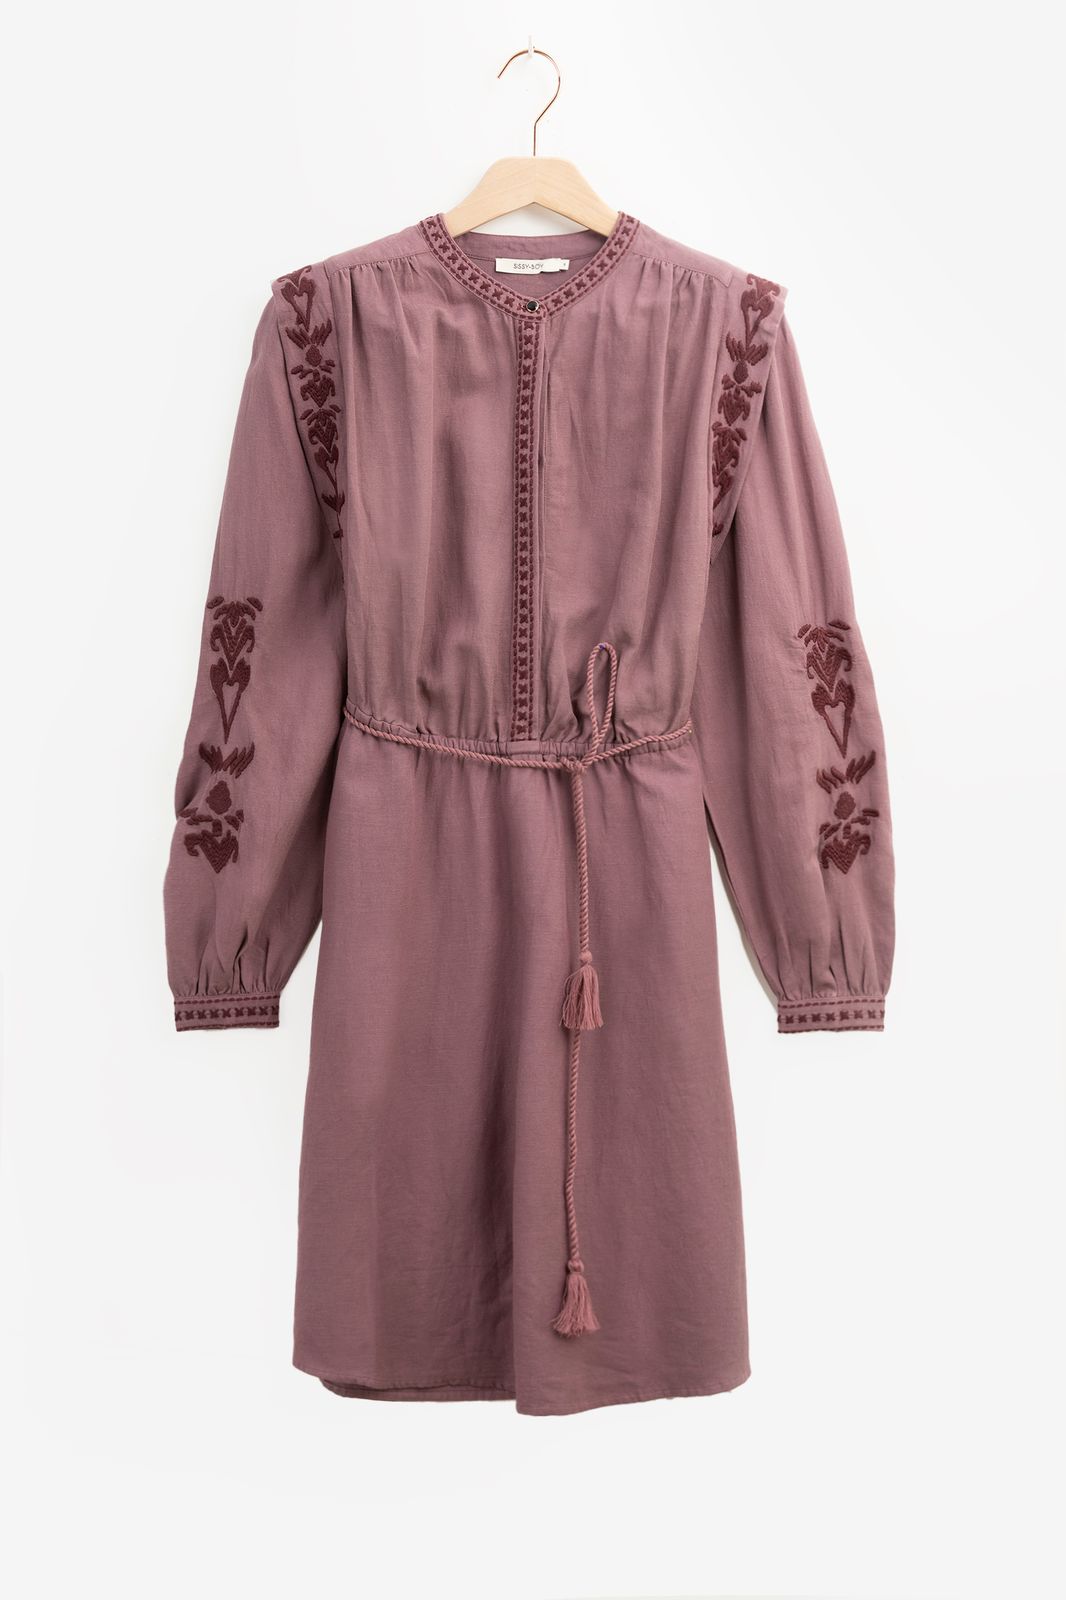 Vergrijsd paarse jurk met embroidery details